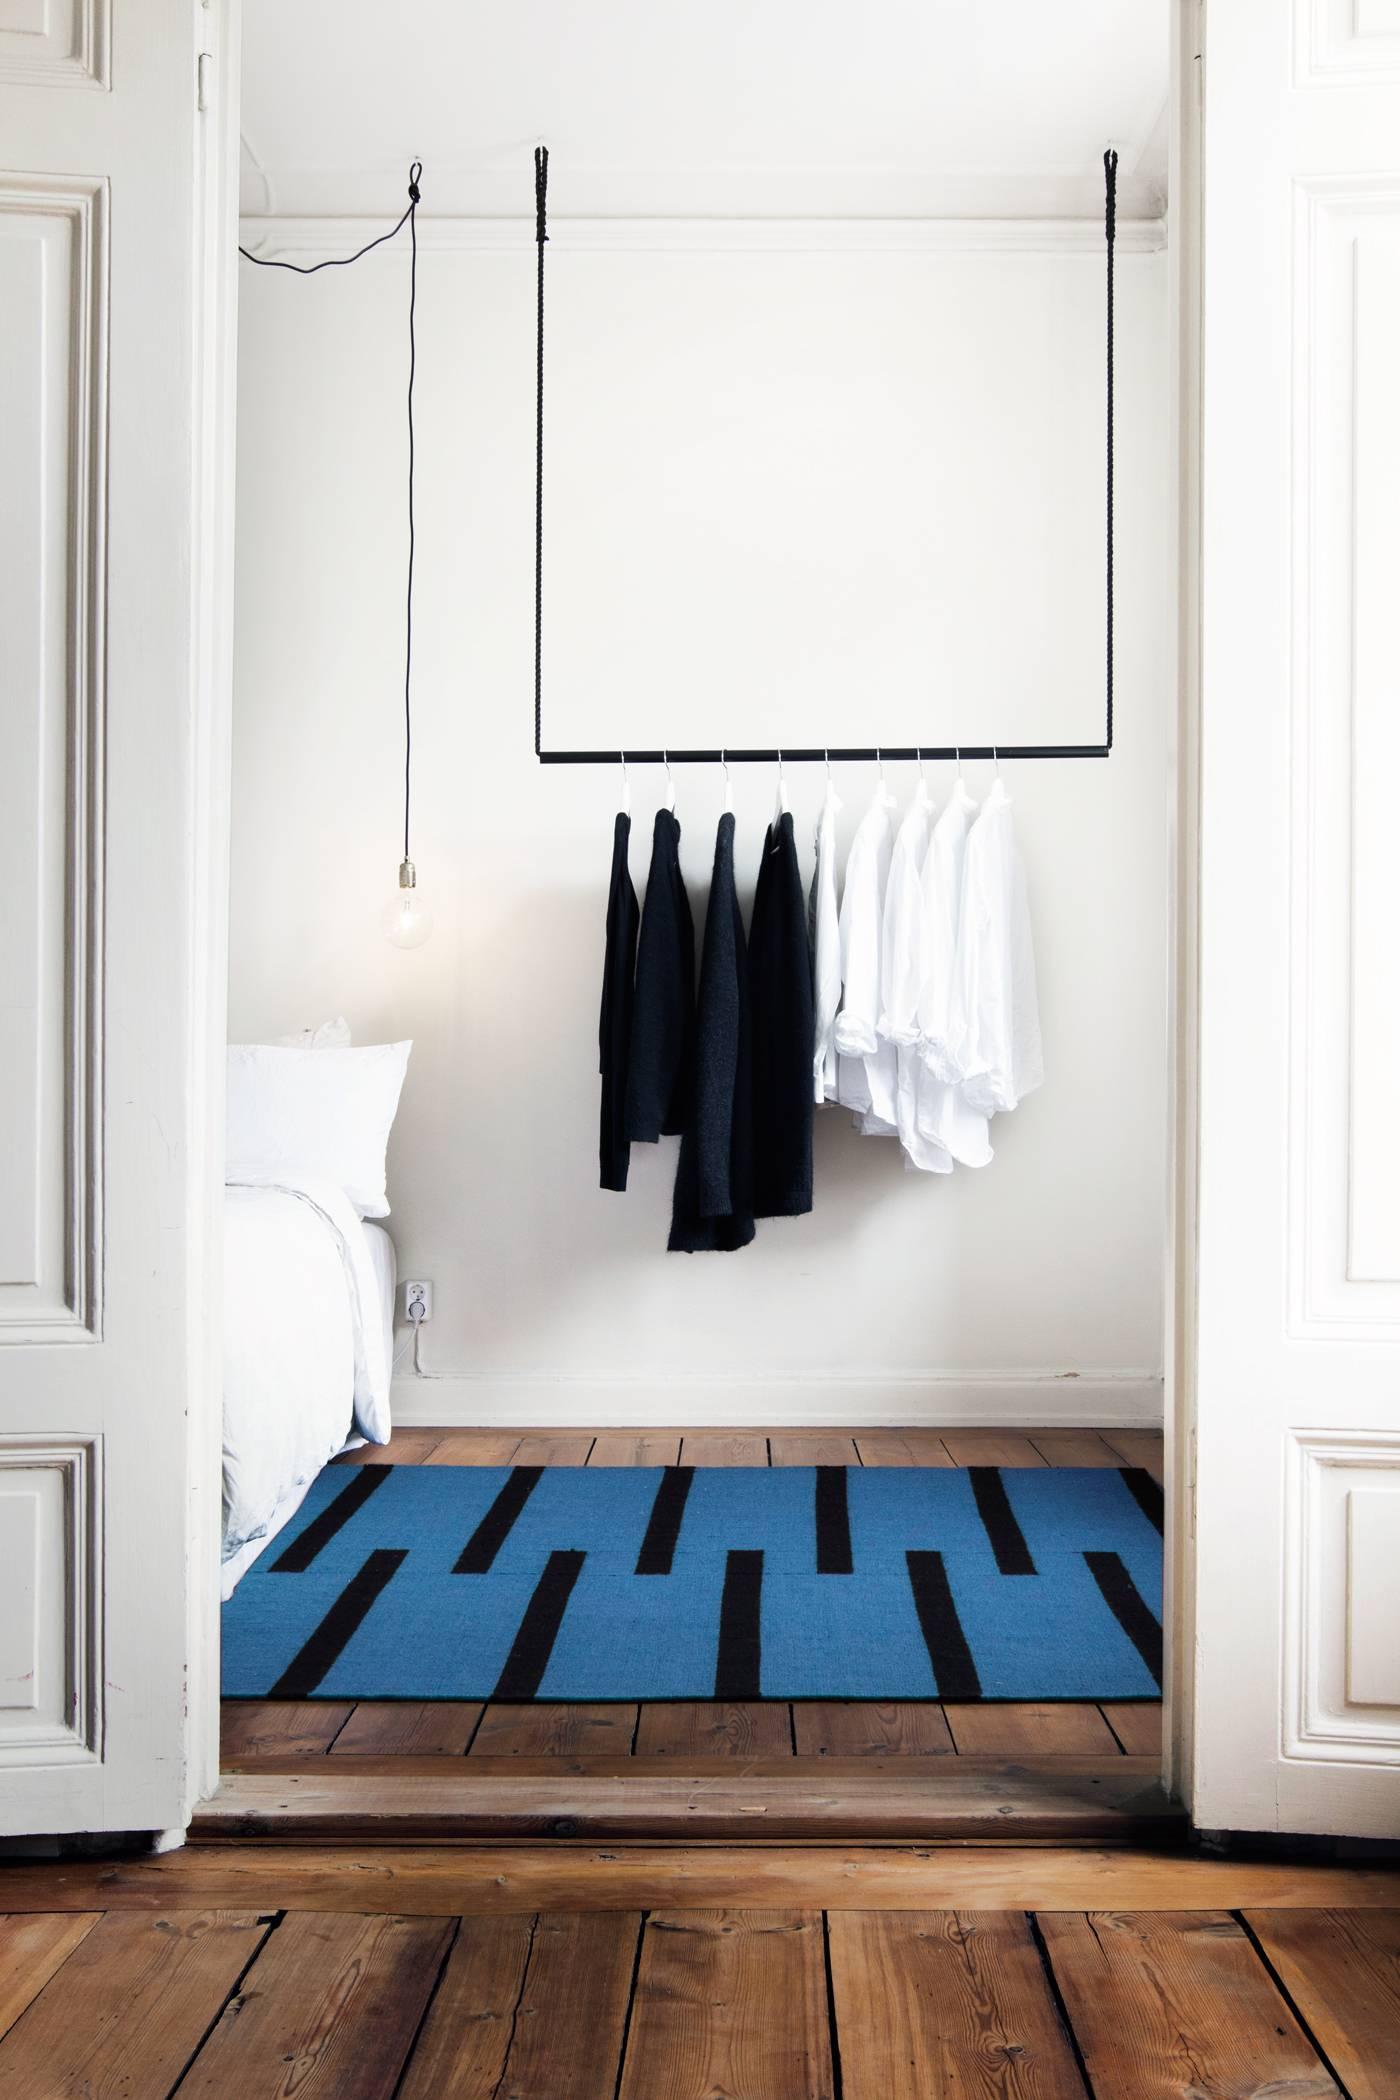 Tiger Blue/Black est un tapis dhurrie/kilim moderne au design scandinave. Il est disponible en différentes tailles - voir les options de personnalisation ci-dessous. 

Notre tigre suédois présente des rayures noires audacieuses sur des couleurs